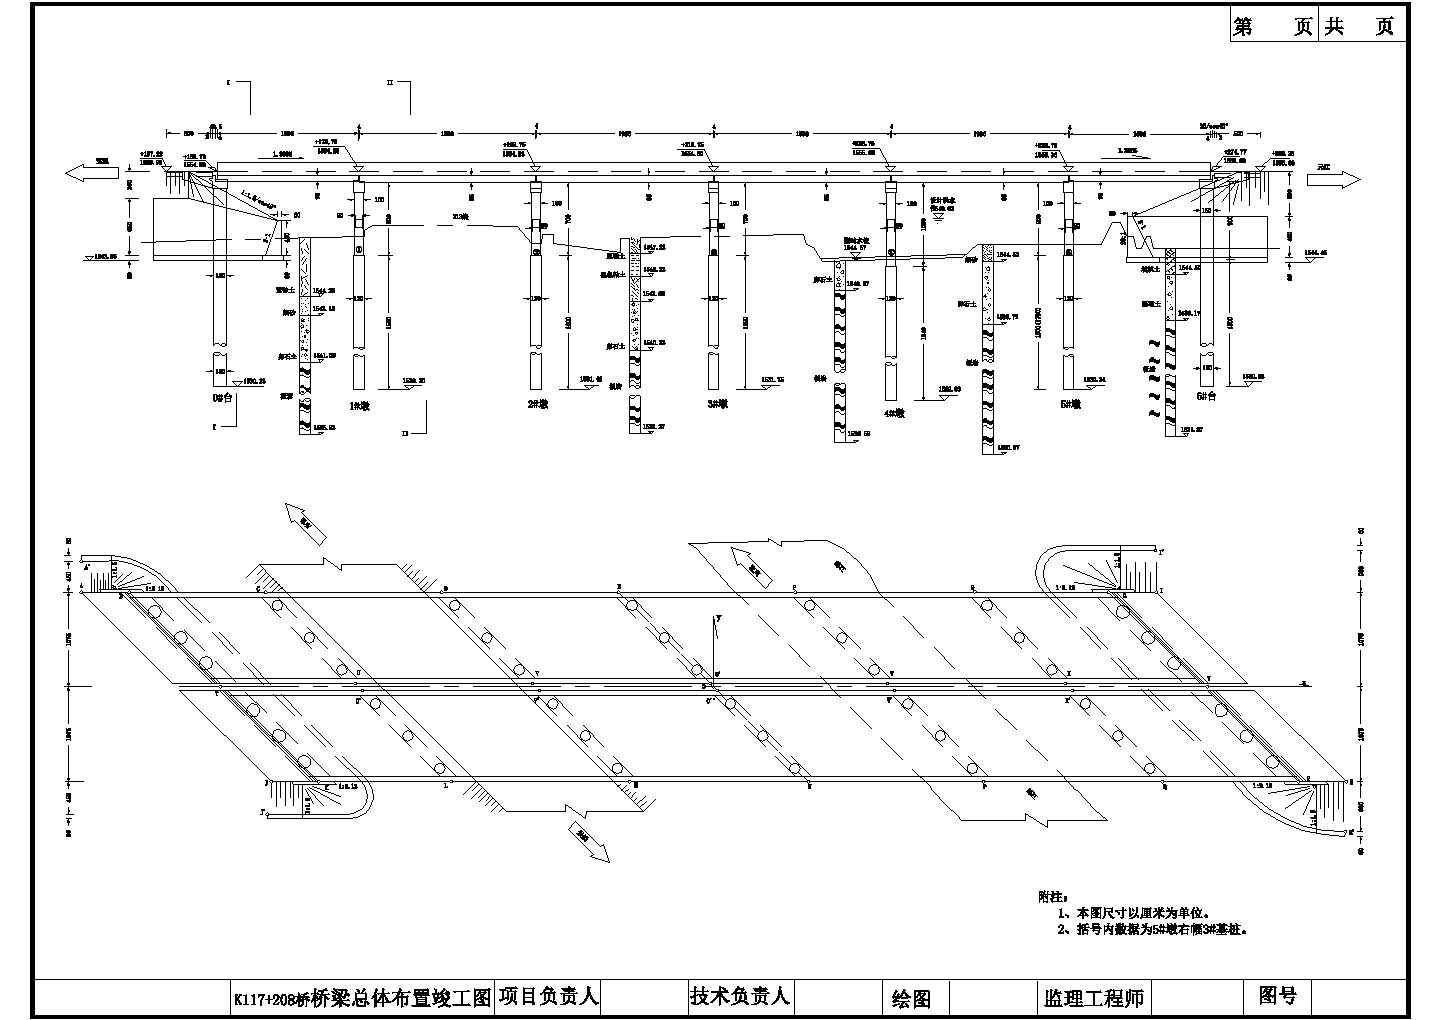 K117+208桥总体布置竣工节点详图-图二